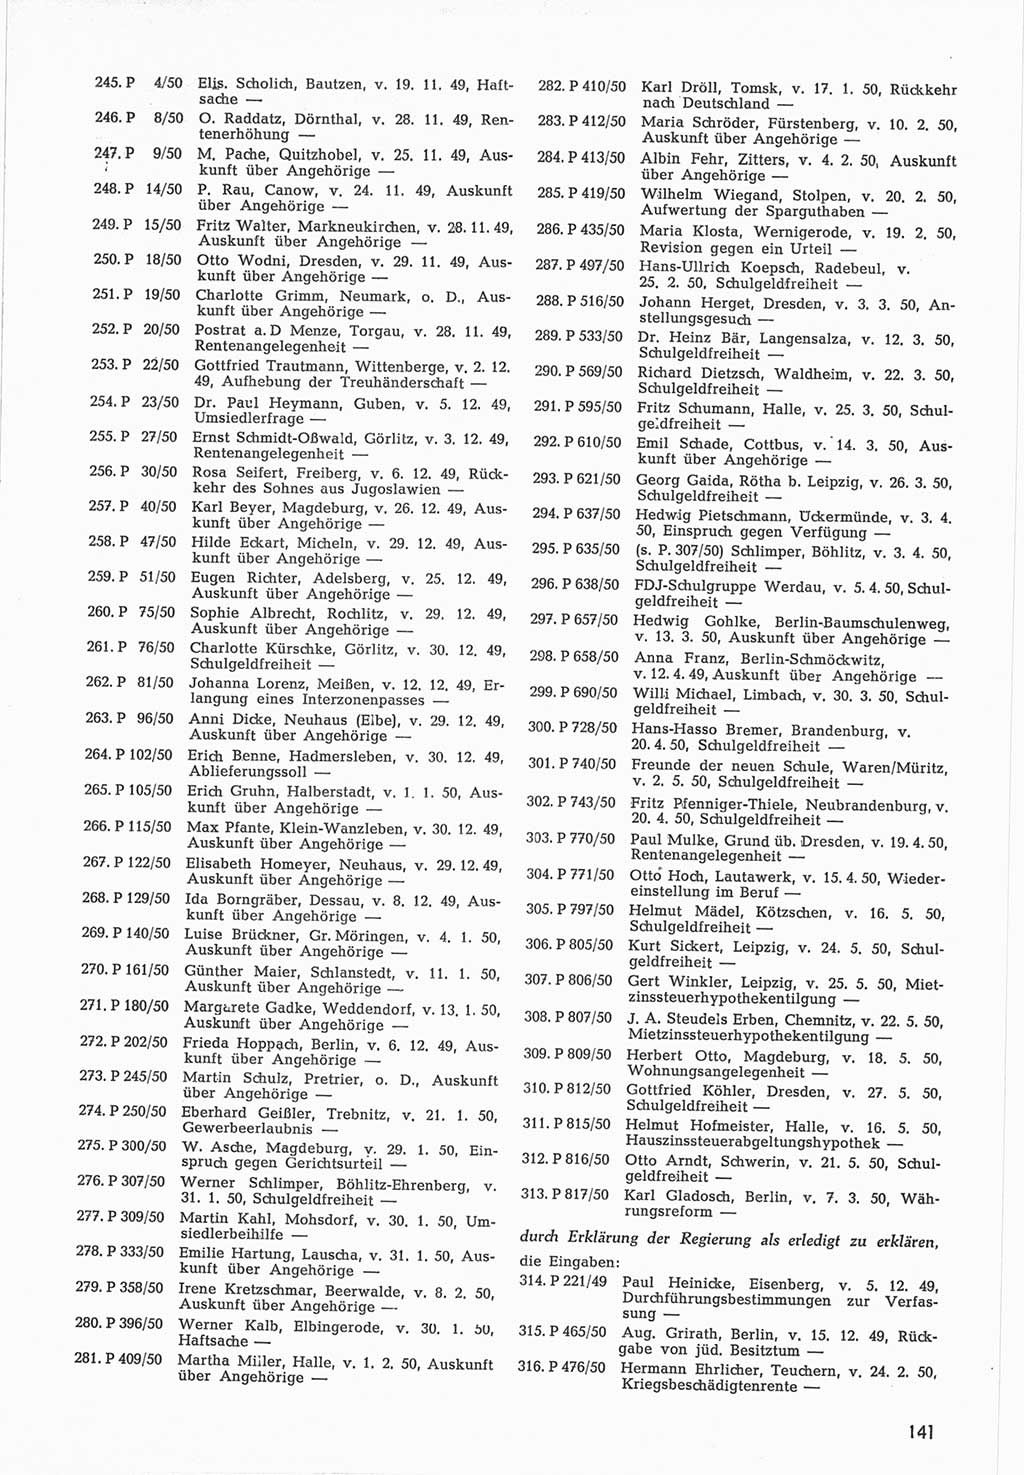 Provisorische Volkskammer (VK) der Deutschen Demokratischen Republik (DDR) 1949-1950, Dokument 743 (Prov. VK DDR 1949-1950, Dok. 743)